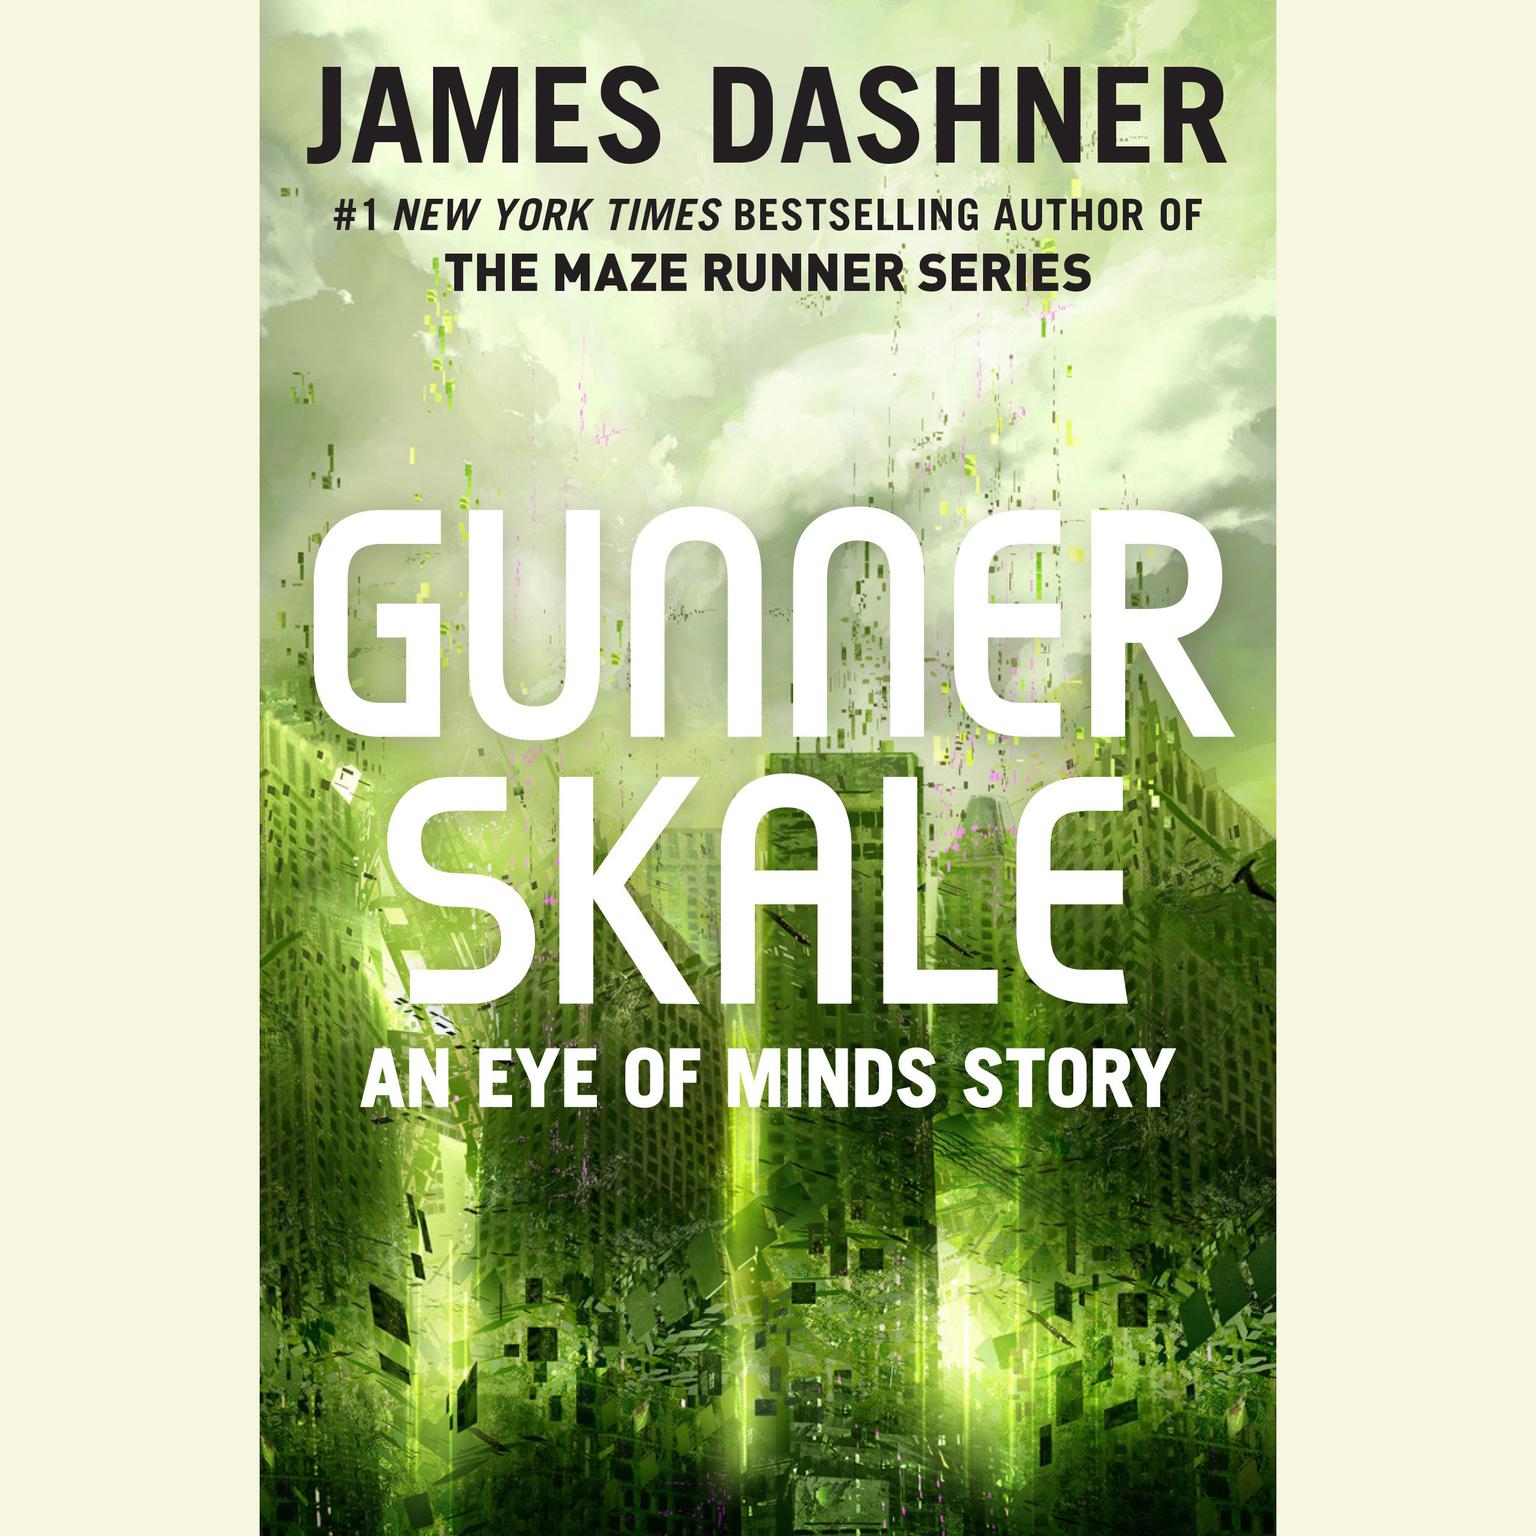 Gunner Skale: An Eye of Minds Story (The Mortality Doctrine): An Eye of Minds Story Audiobook, by James Dashner